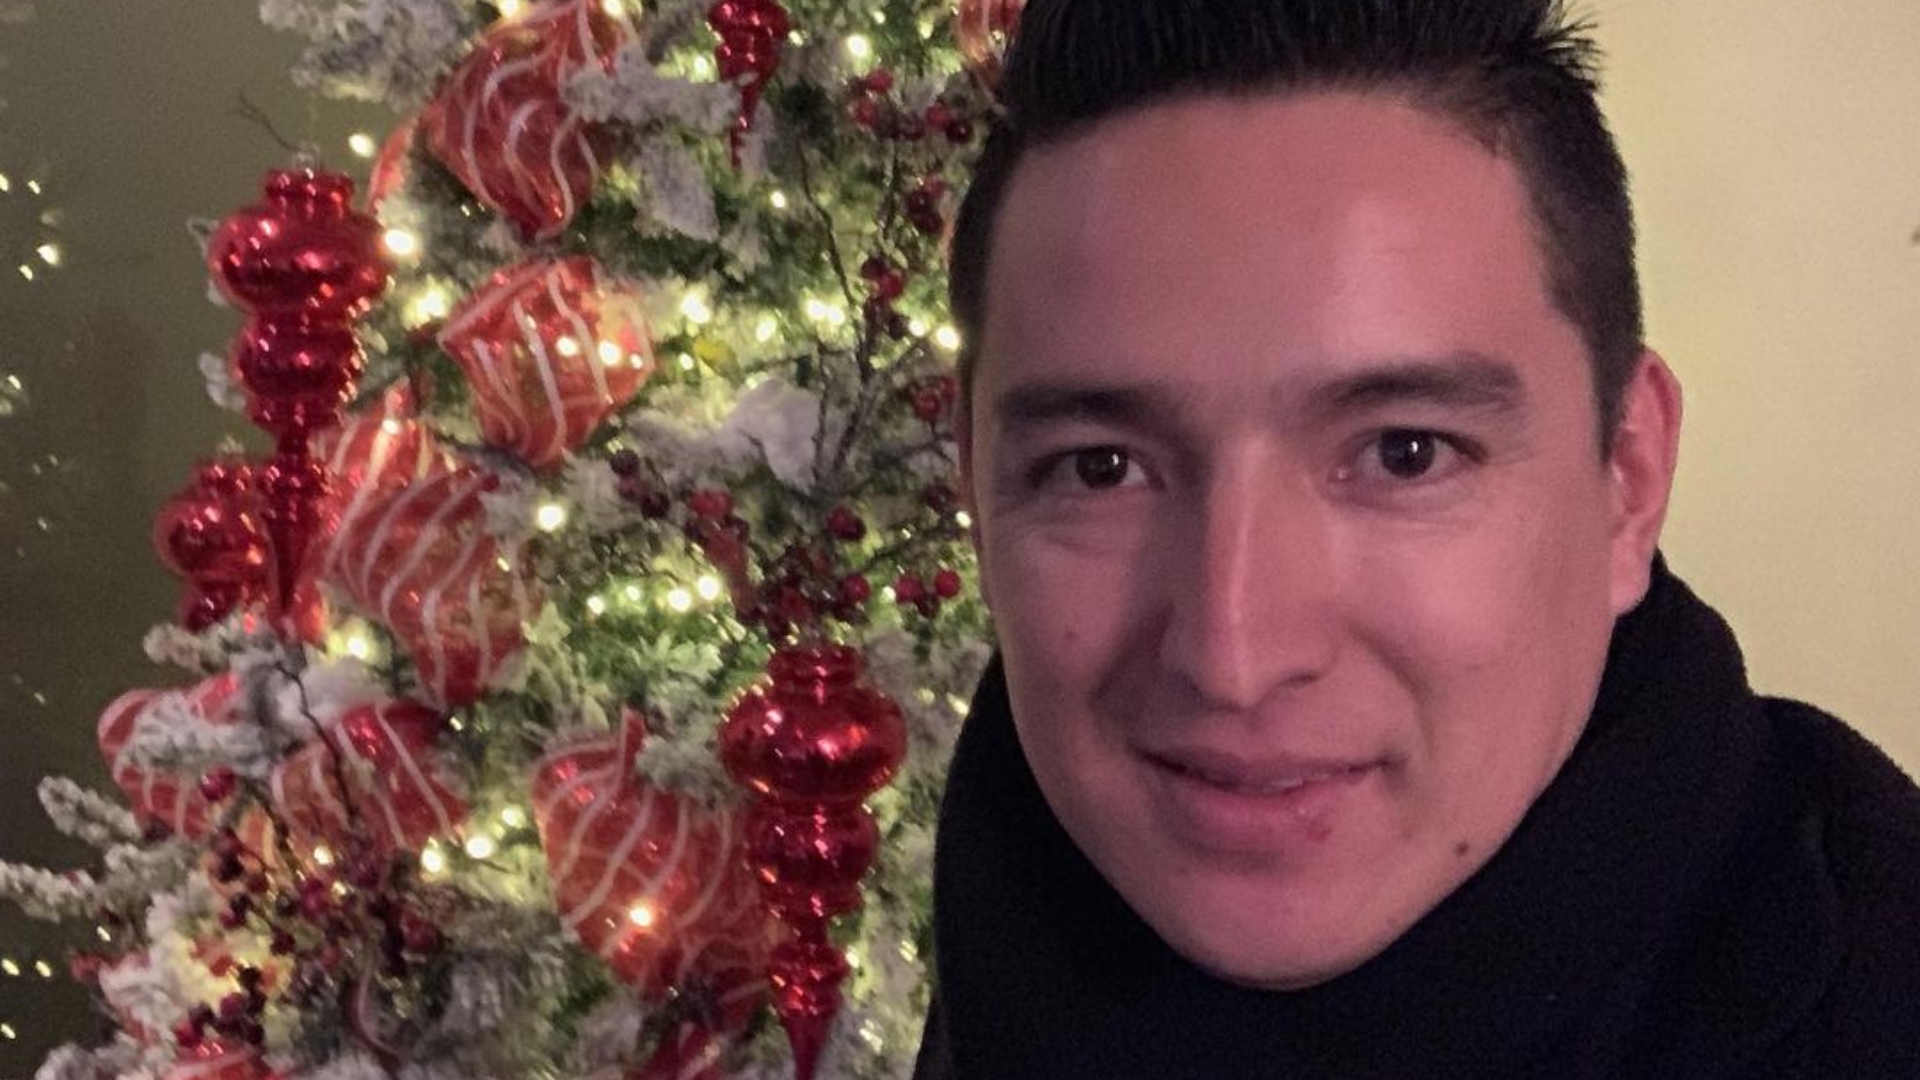 Gil Rodríguez, El Mocos, enseña su pino de Navidad en Instagram, donde parecía llevar una buena vida
Foto: Instagram / gilrodriguez8)